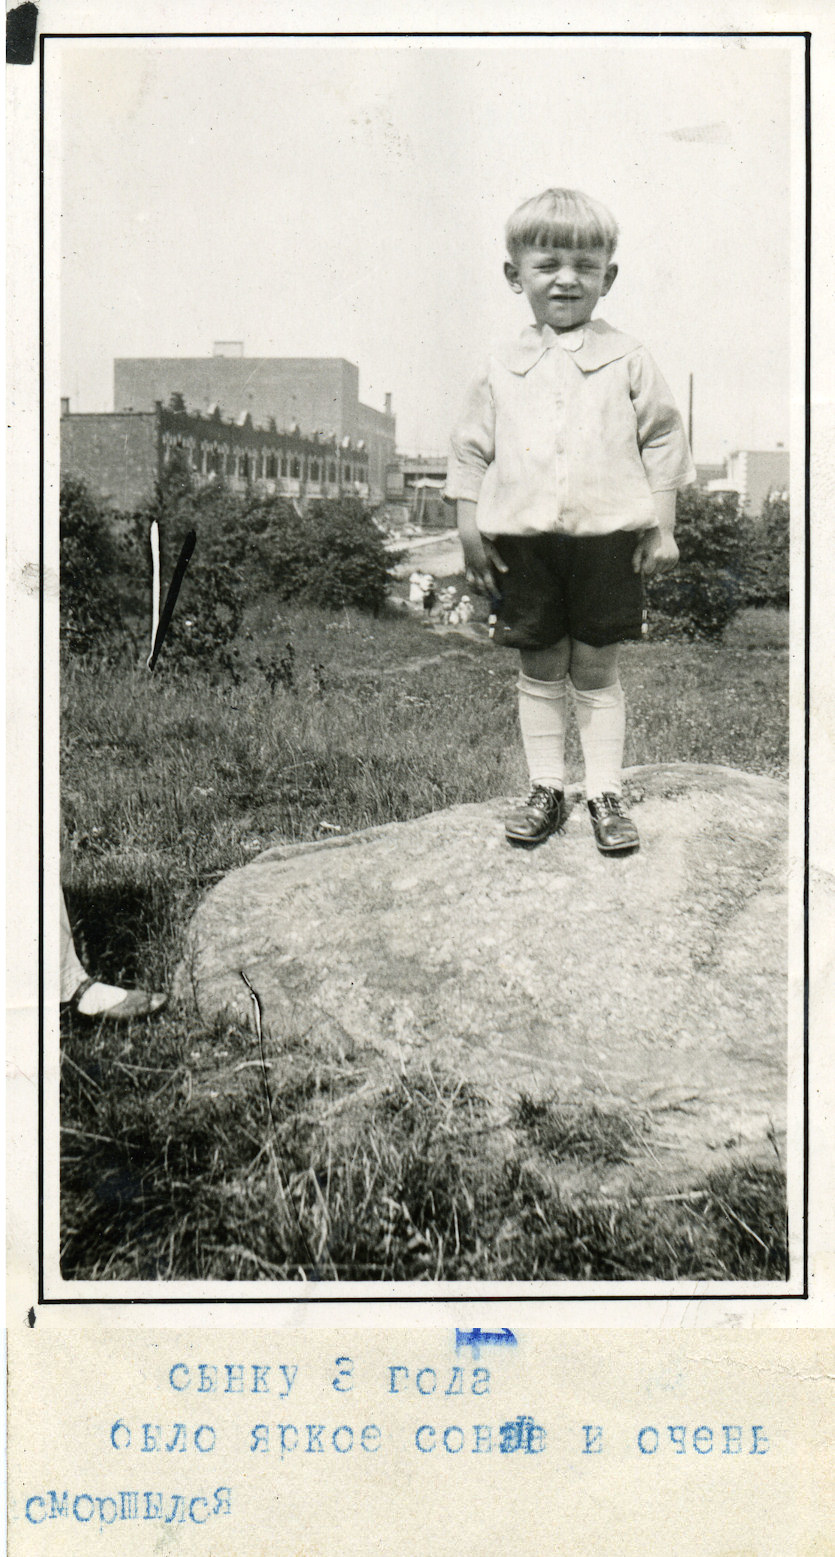 Alec Pawluk at age 3.